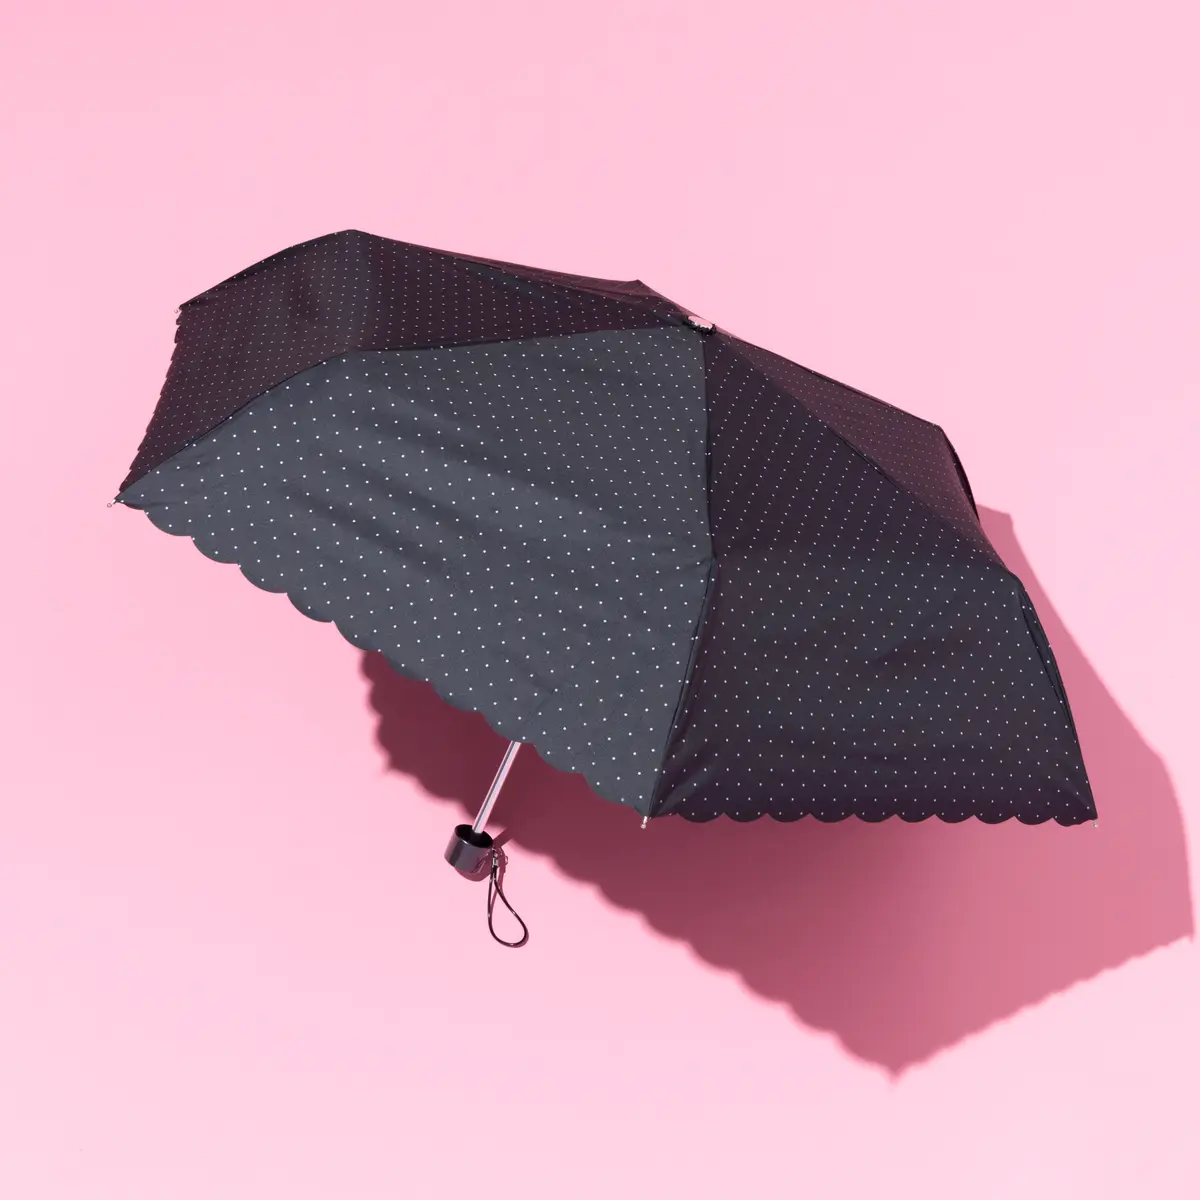 ニトリの日傘の撮りおろし画像